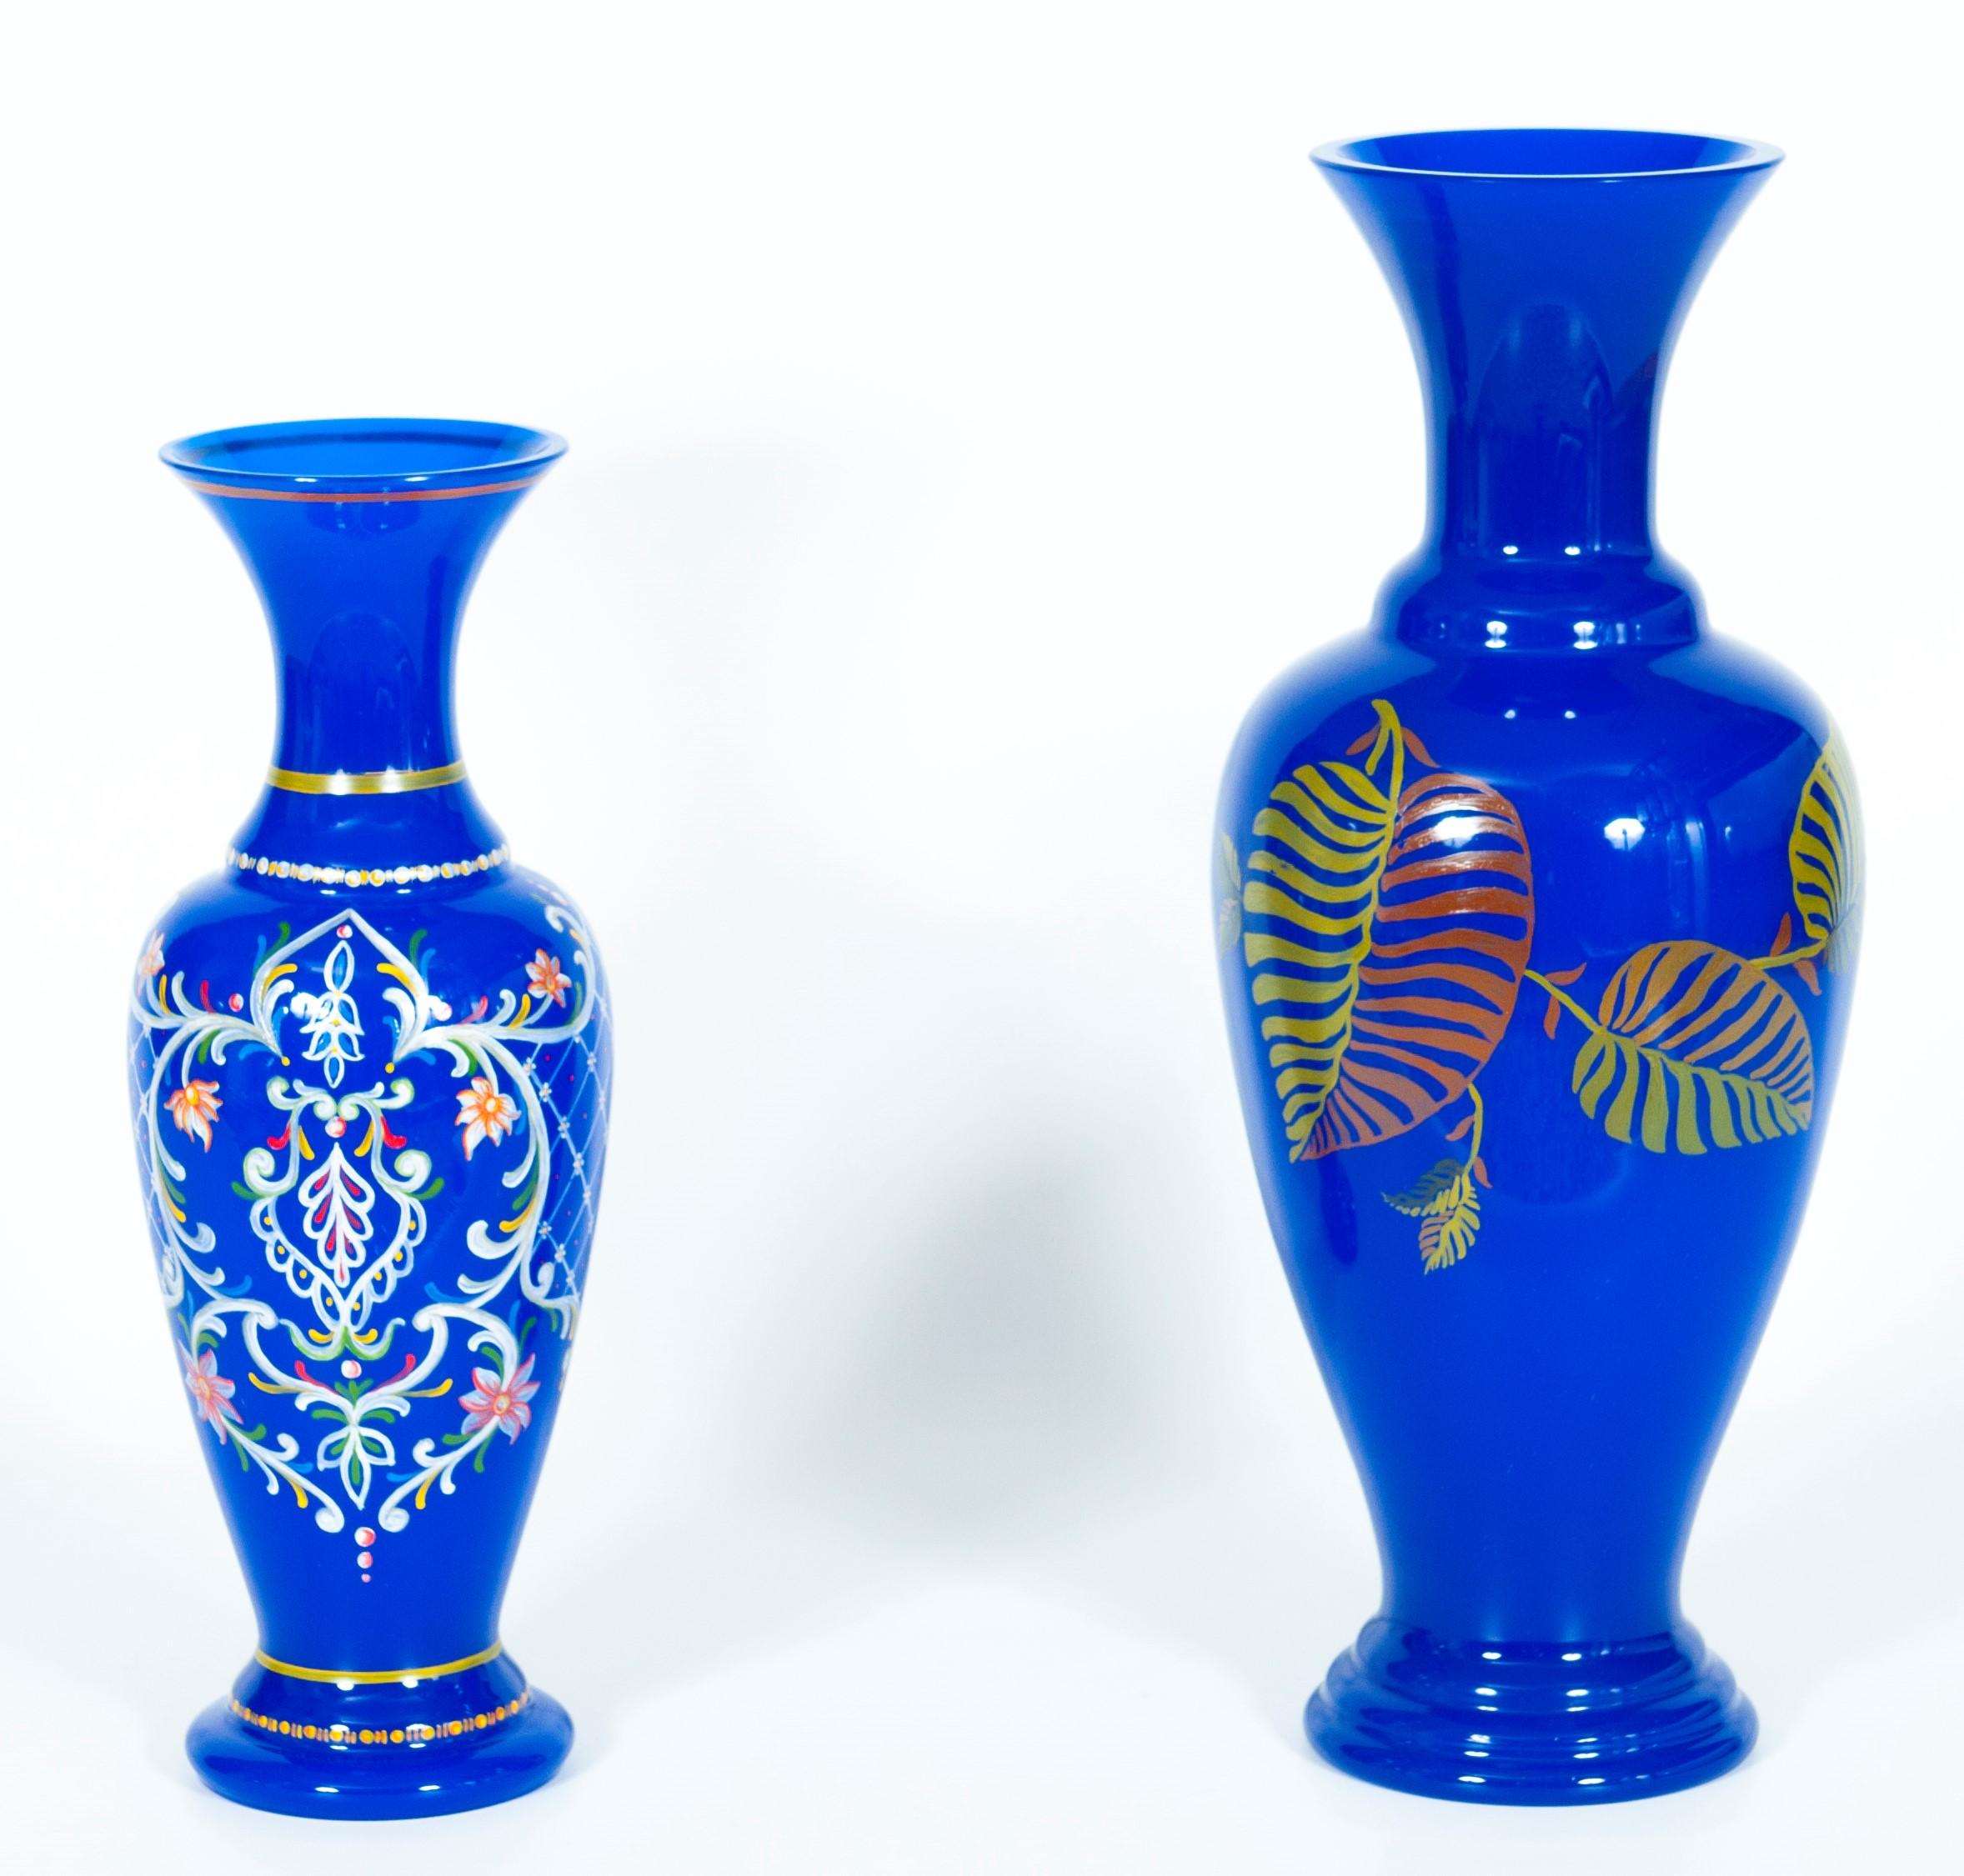 Paar blaue Murano-Glasvasen mit Kunstmalerei, Giovanni Dalla Fina, 1980er Jahre, Italien.
Dieses erstaunliche Paar italienischer Vasen wird dank seiner intensiven blauen Farbe, seiner raffinierten Formen, seiner hochwertigen Details und seiner